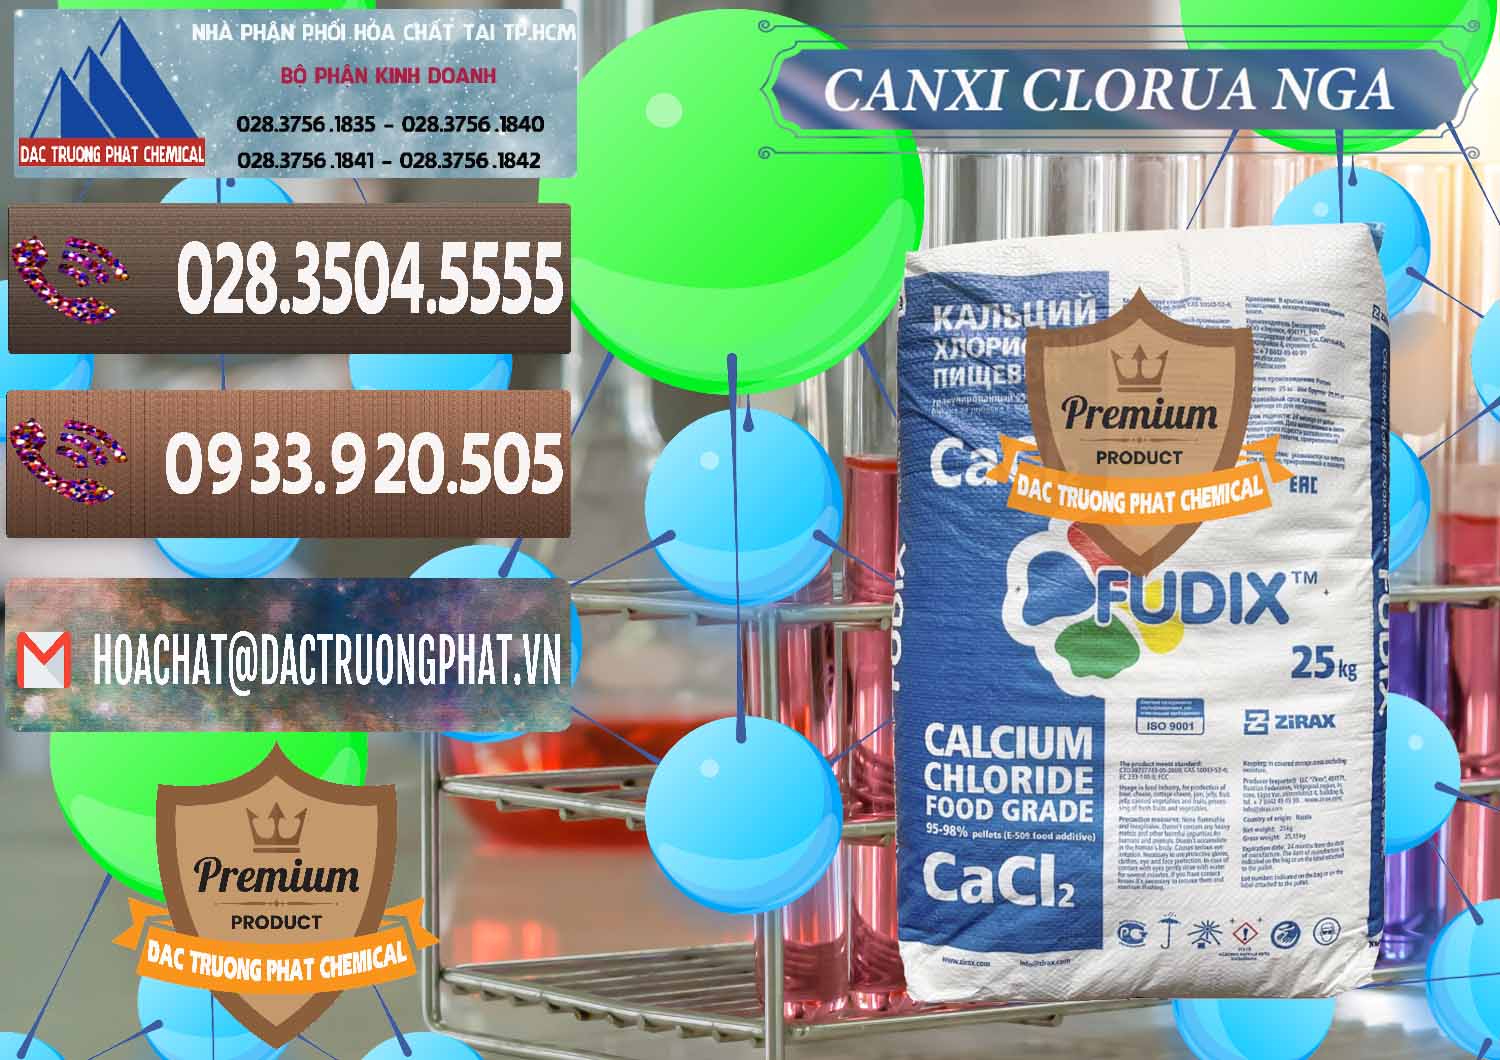 Cty chuyên phân phối - bán CaCl2 – Canxi Clorua Nga Russia - 0430 - Đơn vị bán và phân phối hóa chất tại TP.HCM - hoachatviet.net